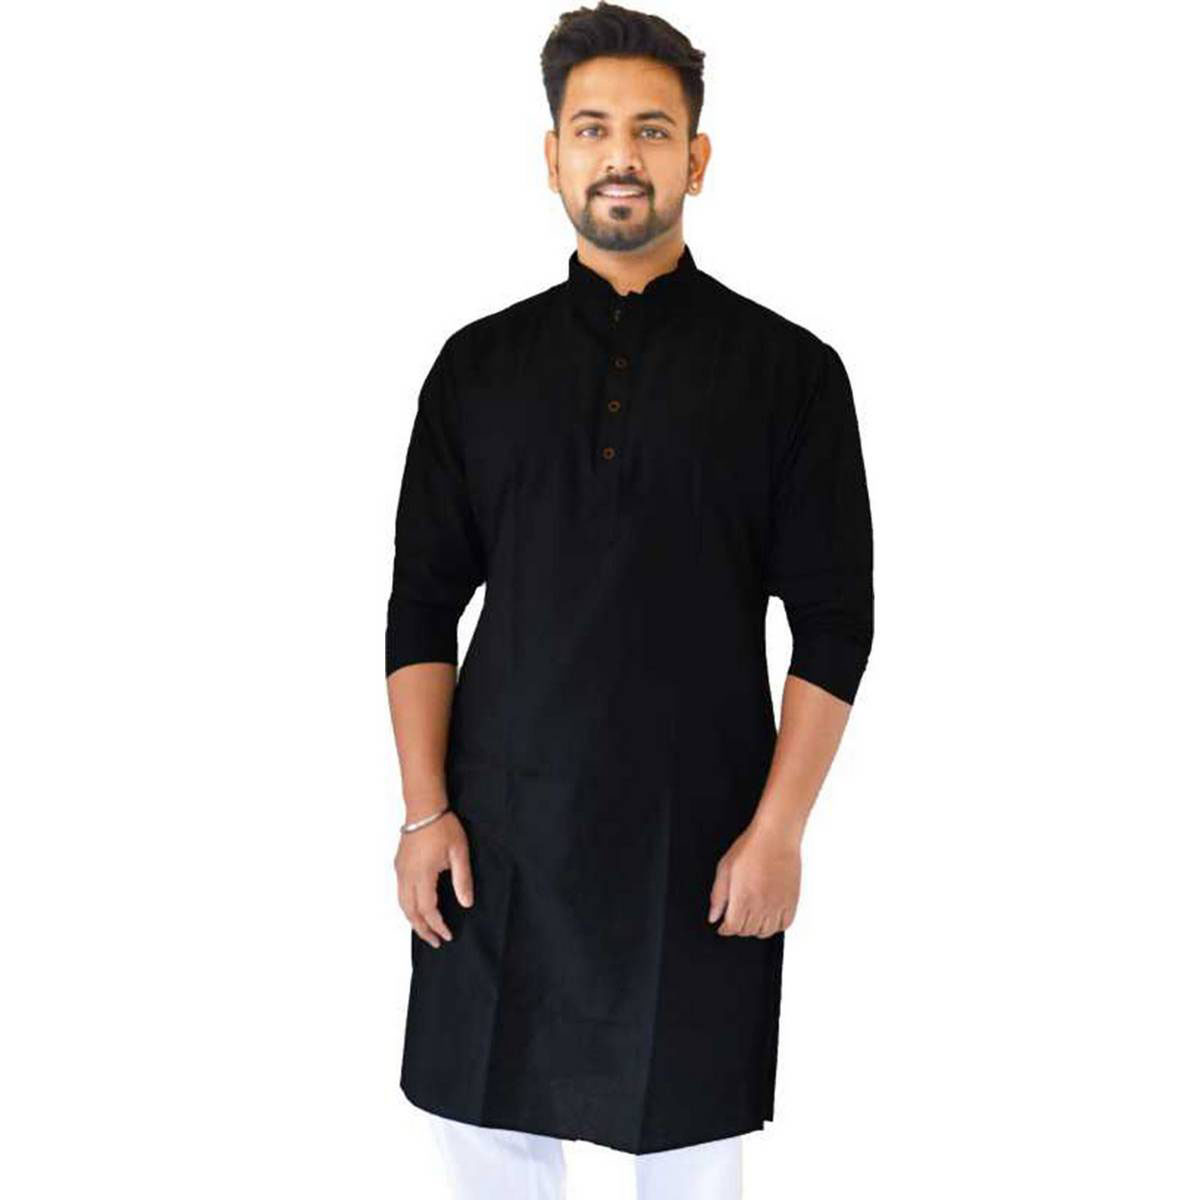 কালো পাঞ্জাবি - black panjabi design - কালারফুল পাঞ্জাবি ডিজাইন - Colorful Punjabi Designs - NeotericIT.com